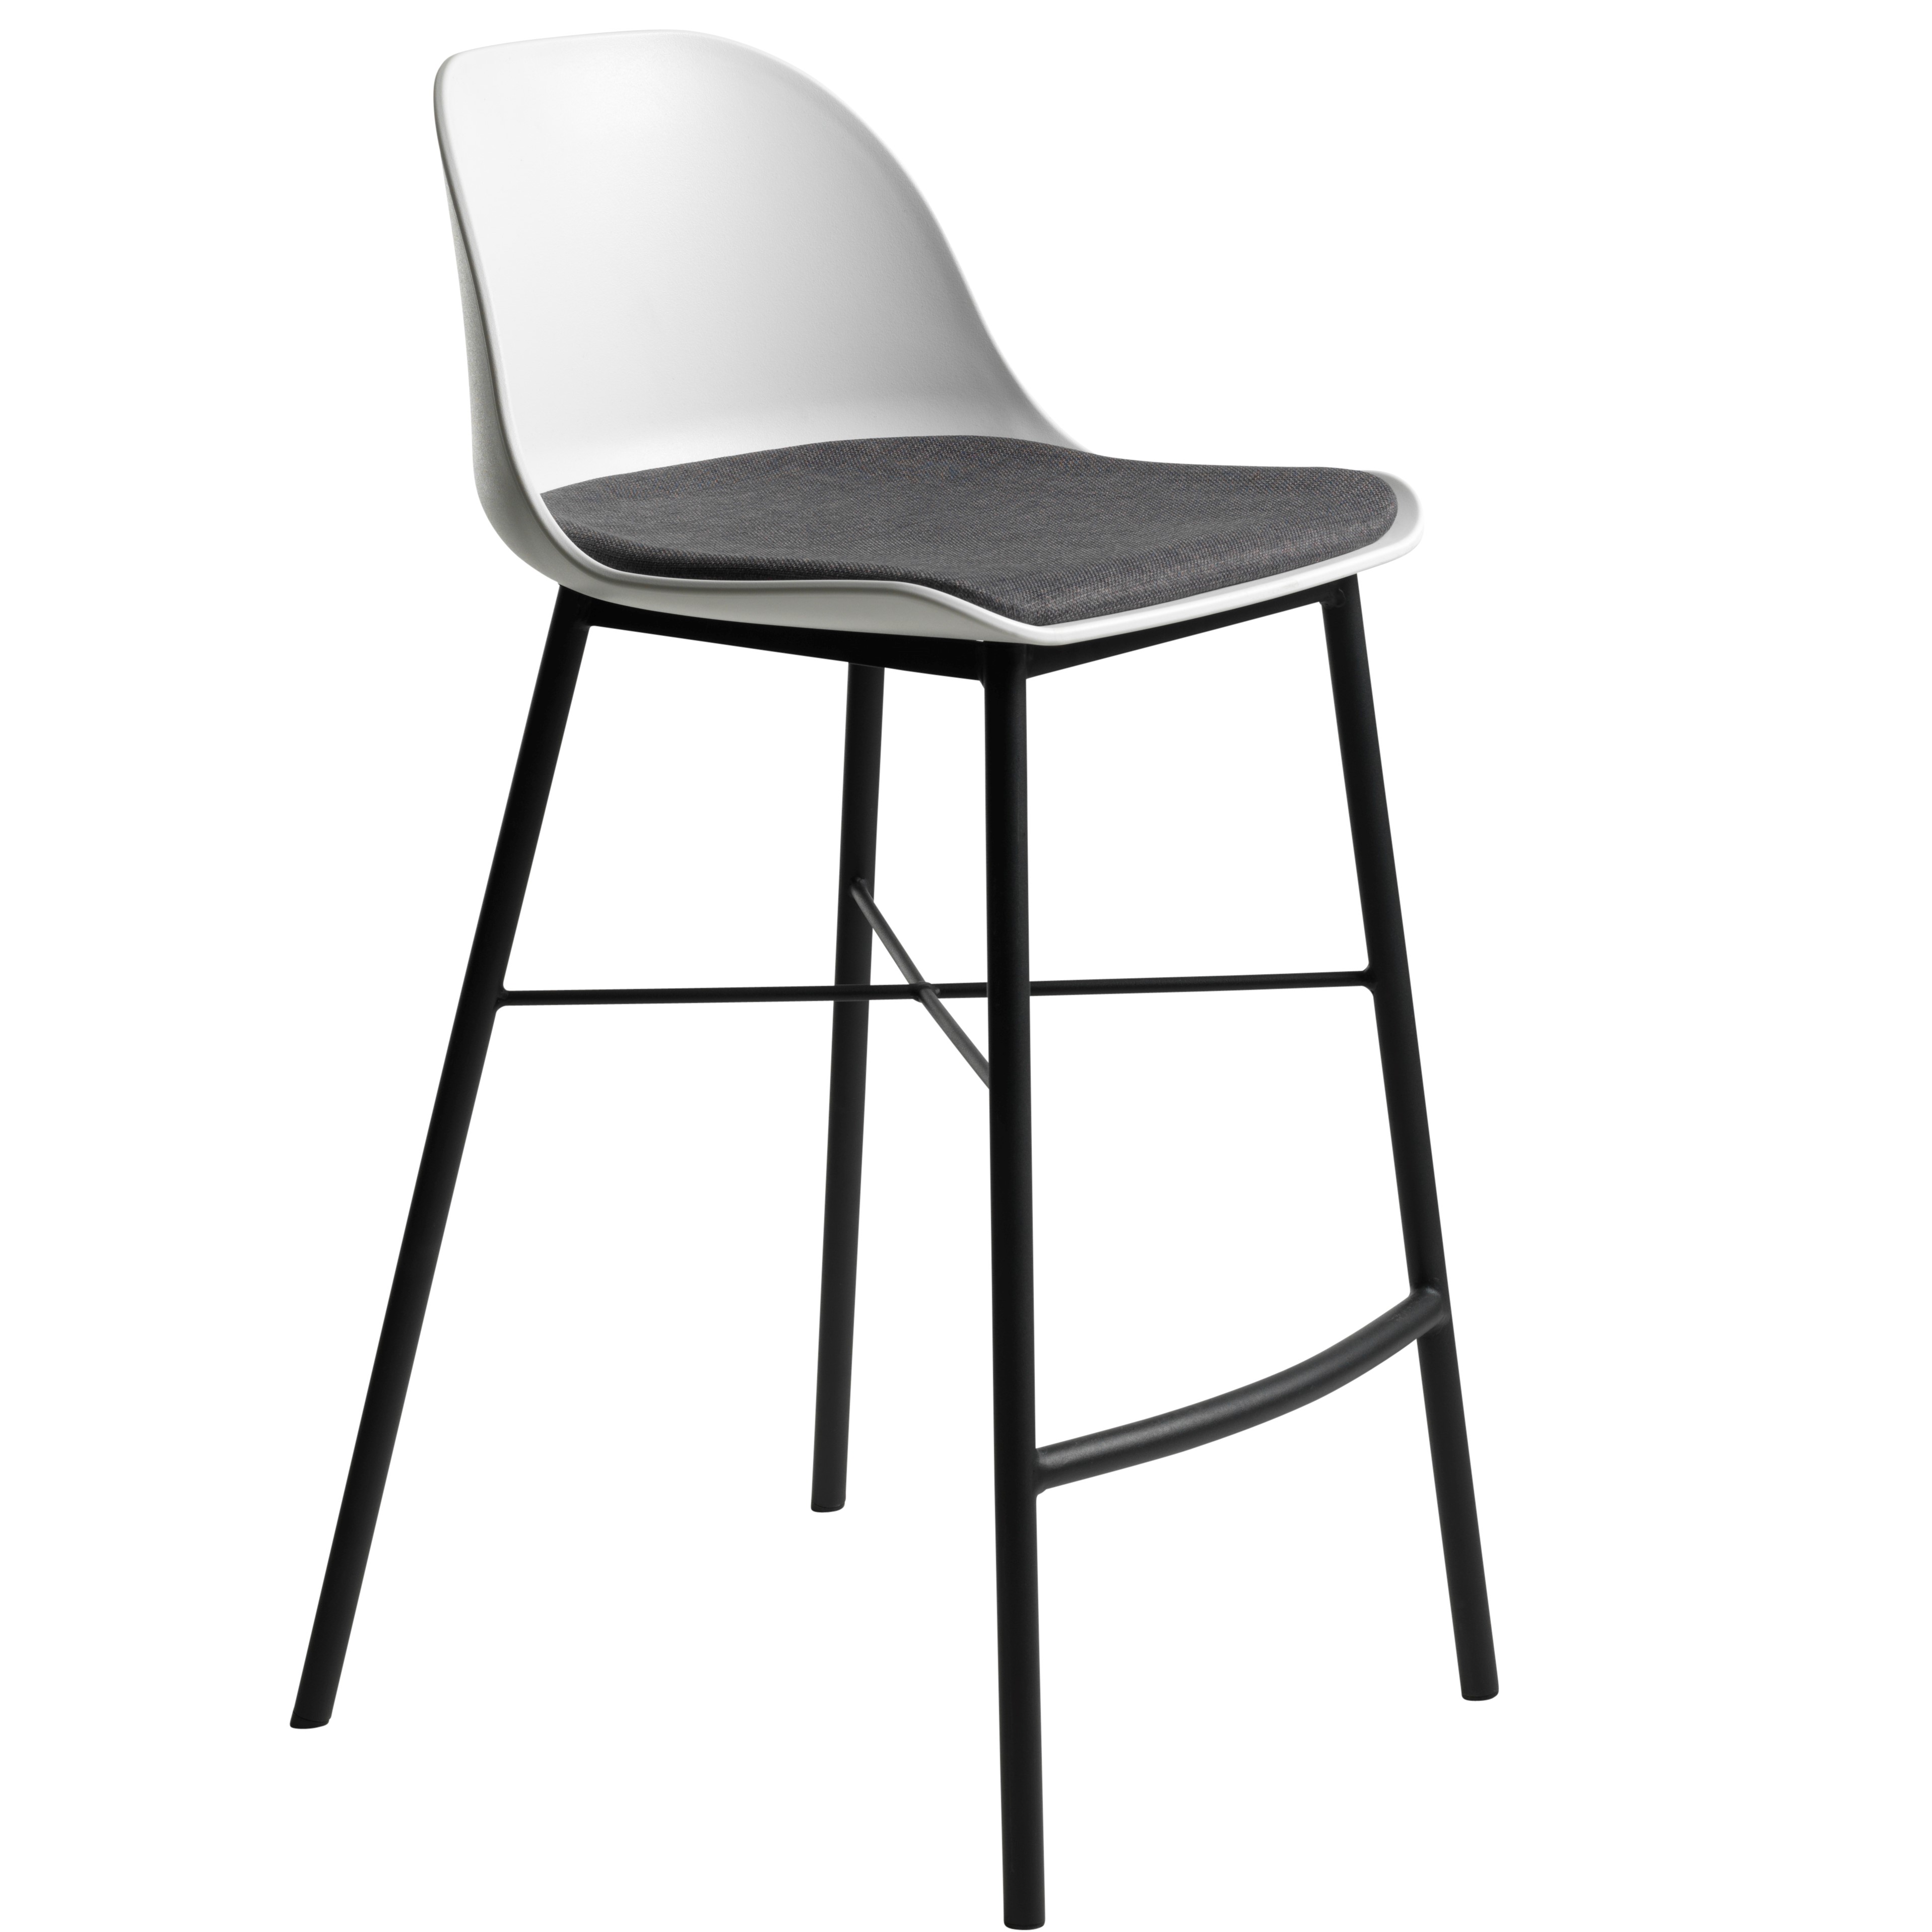 Kunststoffbarhocker Gjeld - Metallbeine - skandinavisches Design - gepolsterte Sitzfläche - weiß